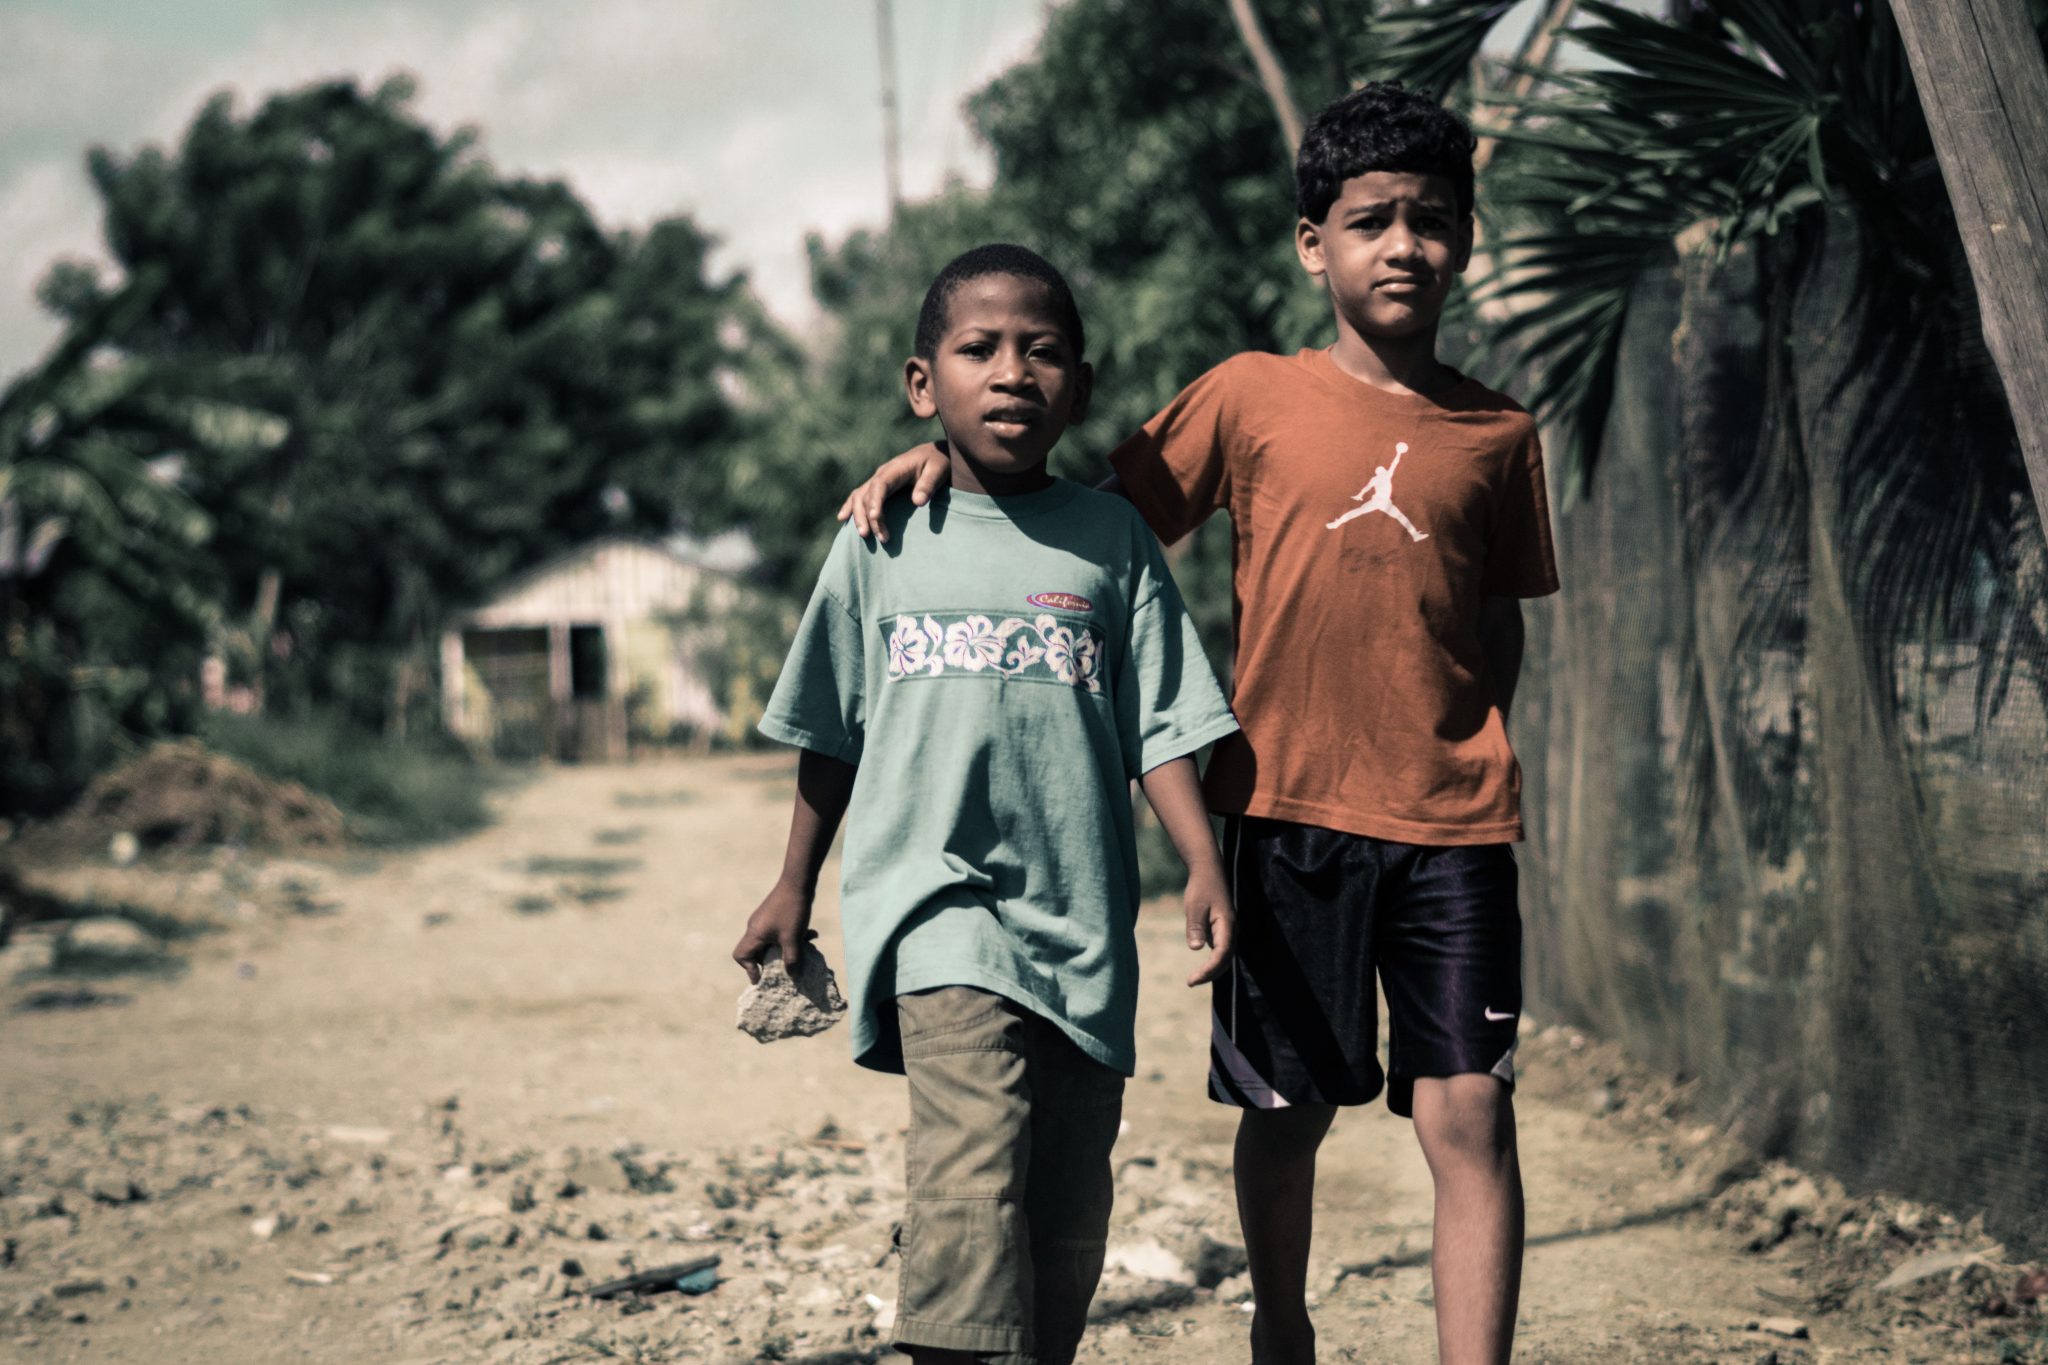 Corona in armen Ländern: „Es gibt auch positive Beispiele von Solidarität“